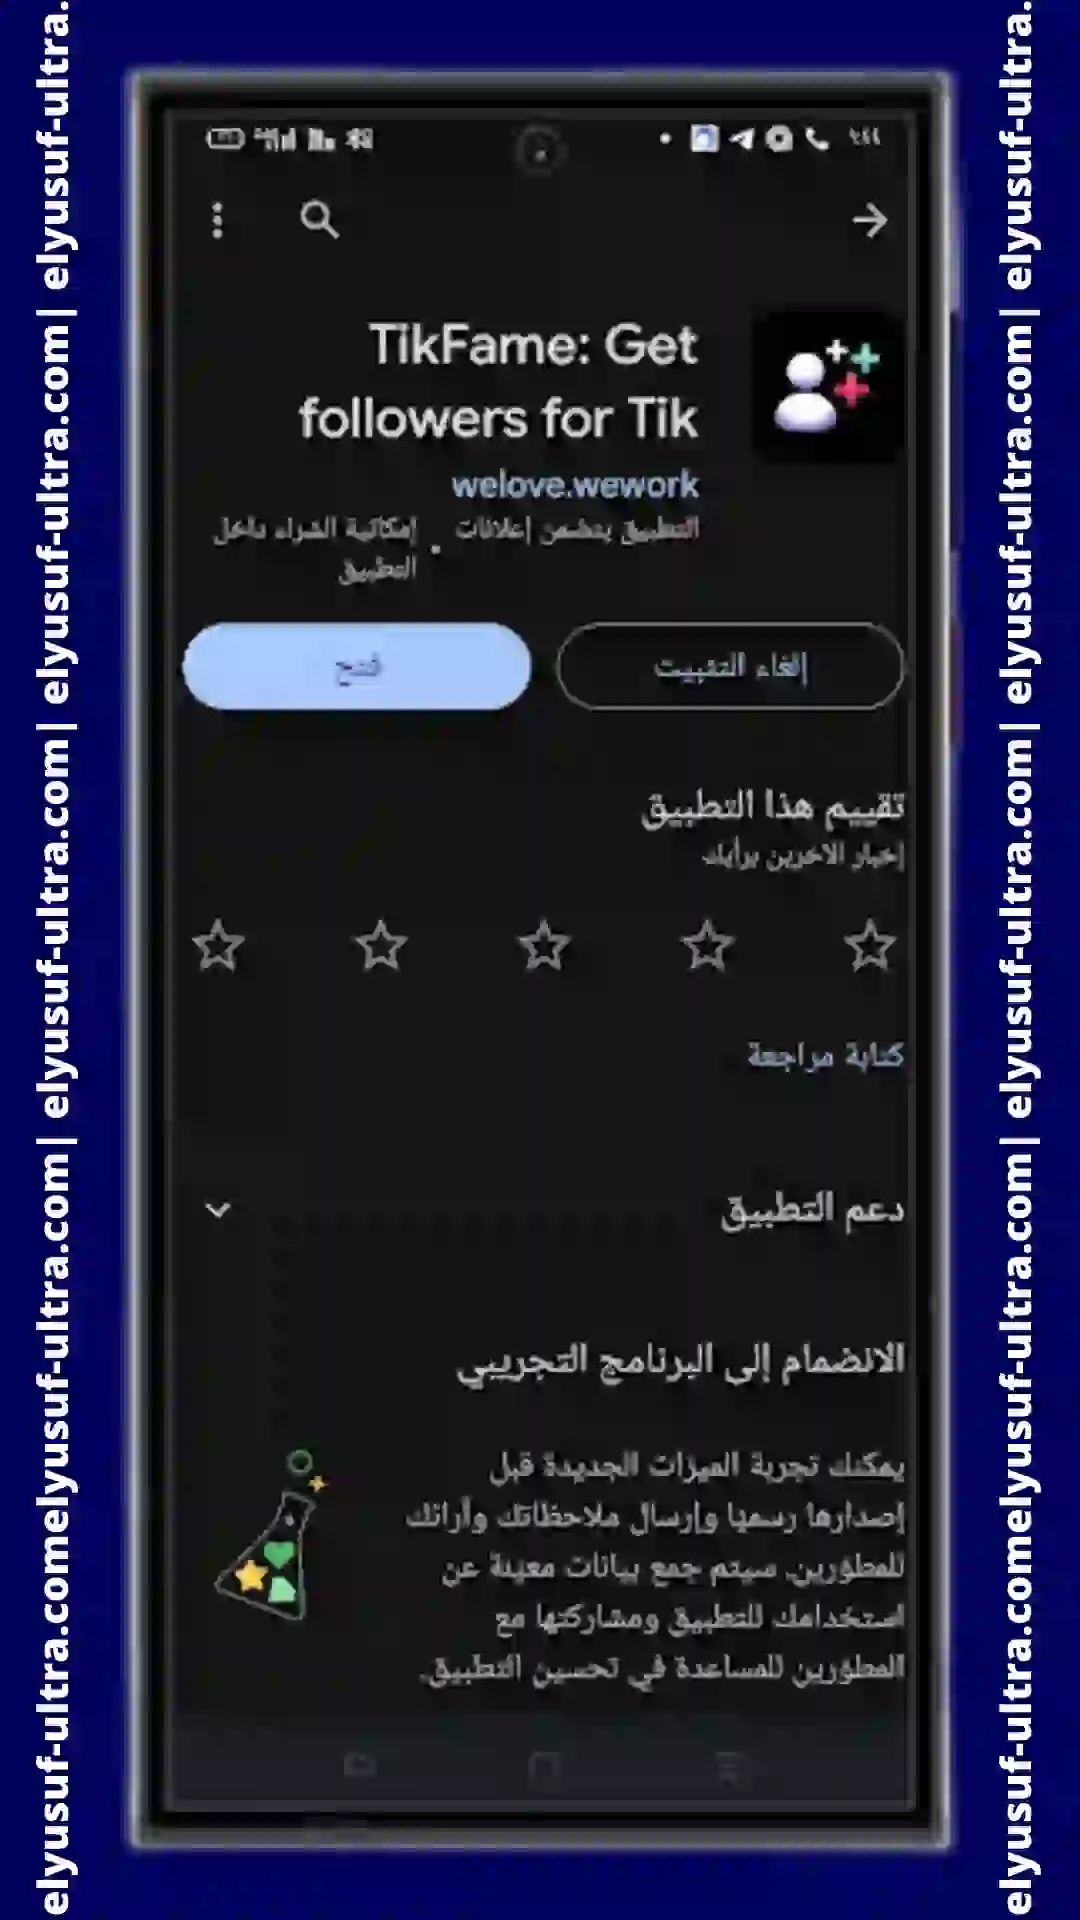 تنزيل تطبيق TikFame Get followers for Tik